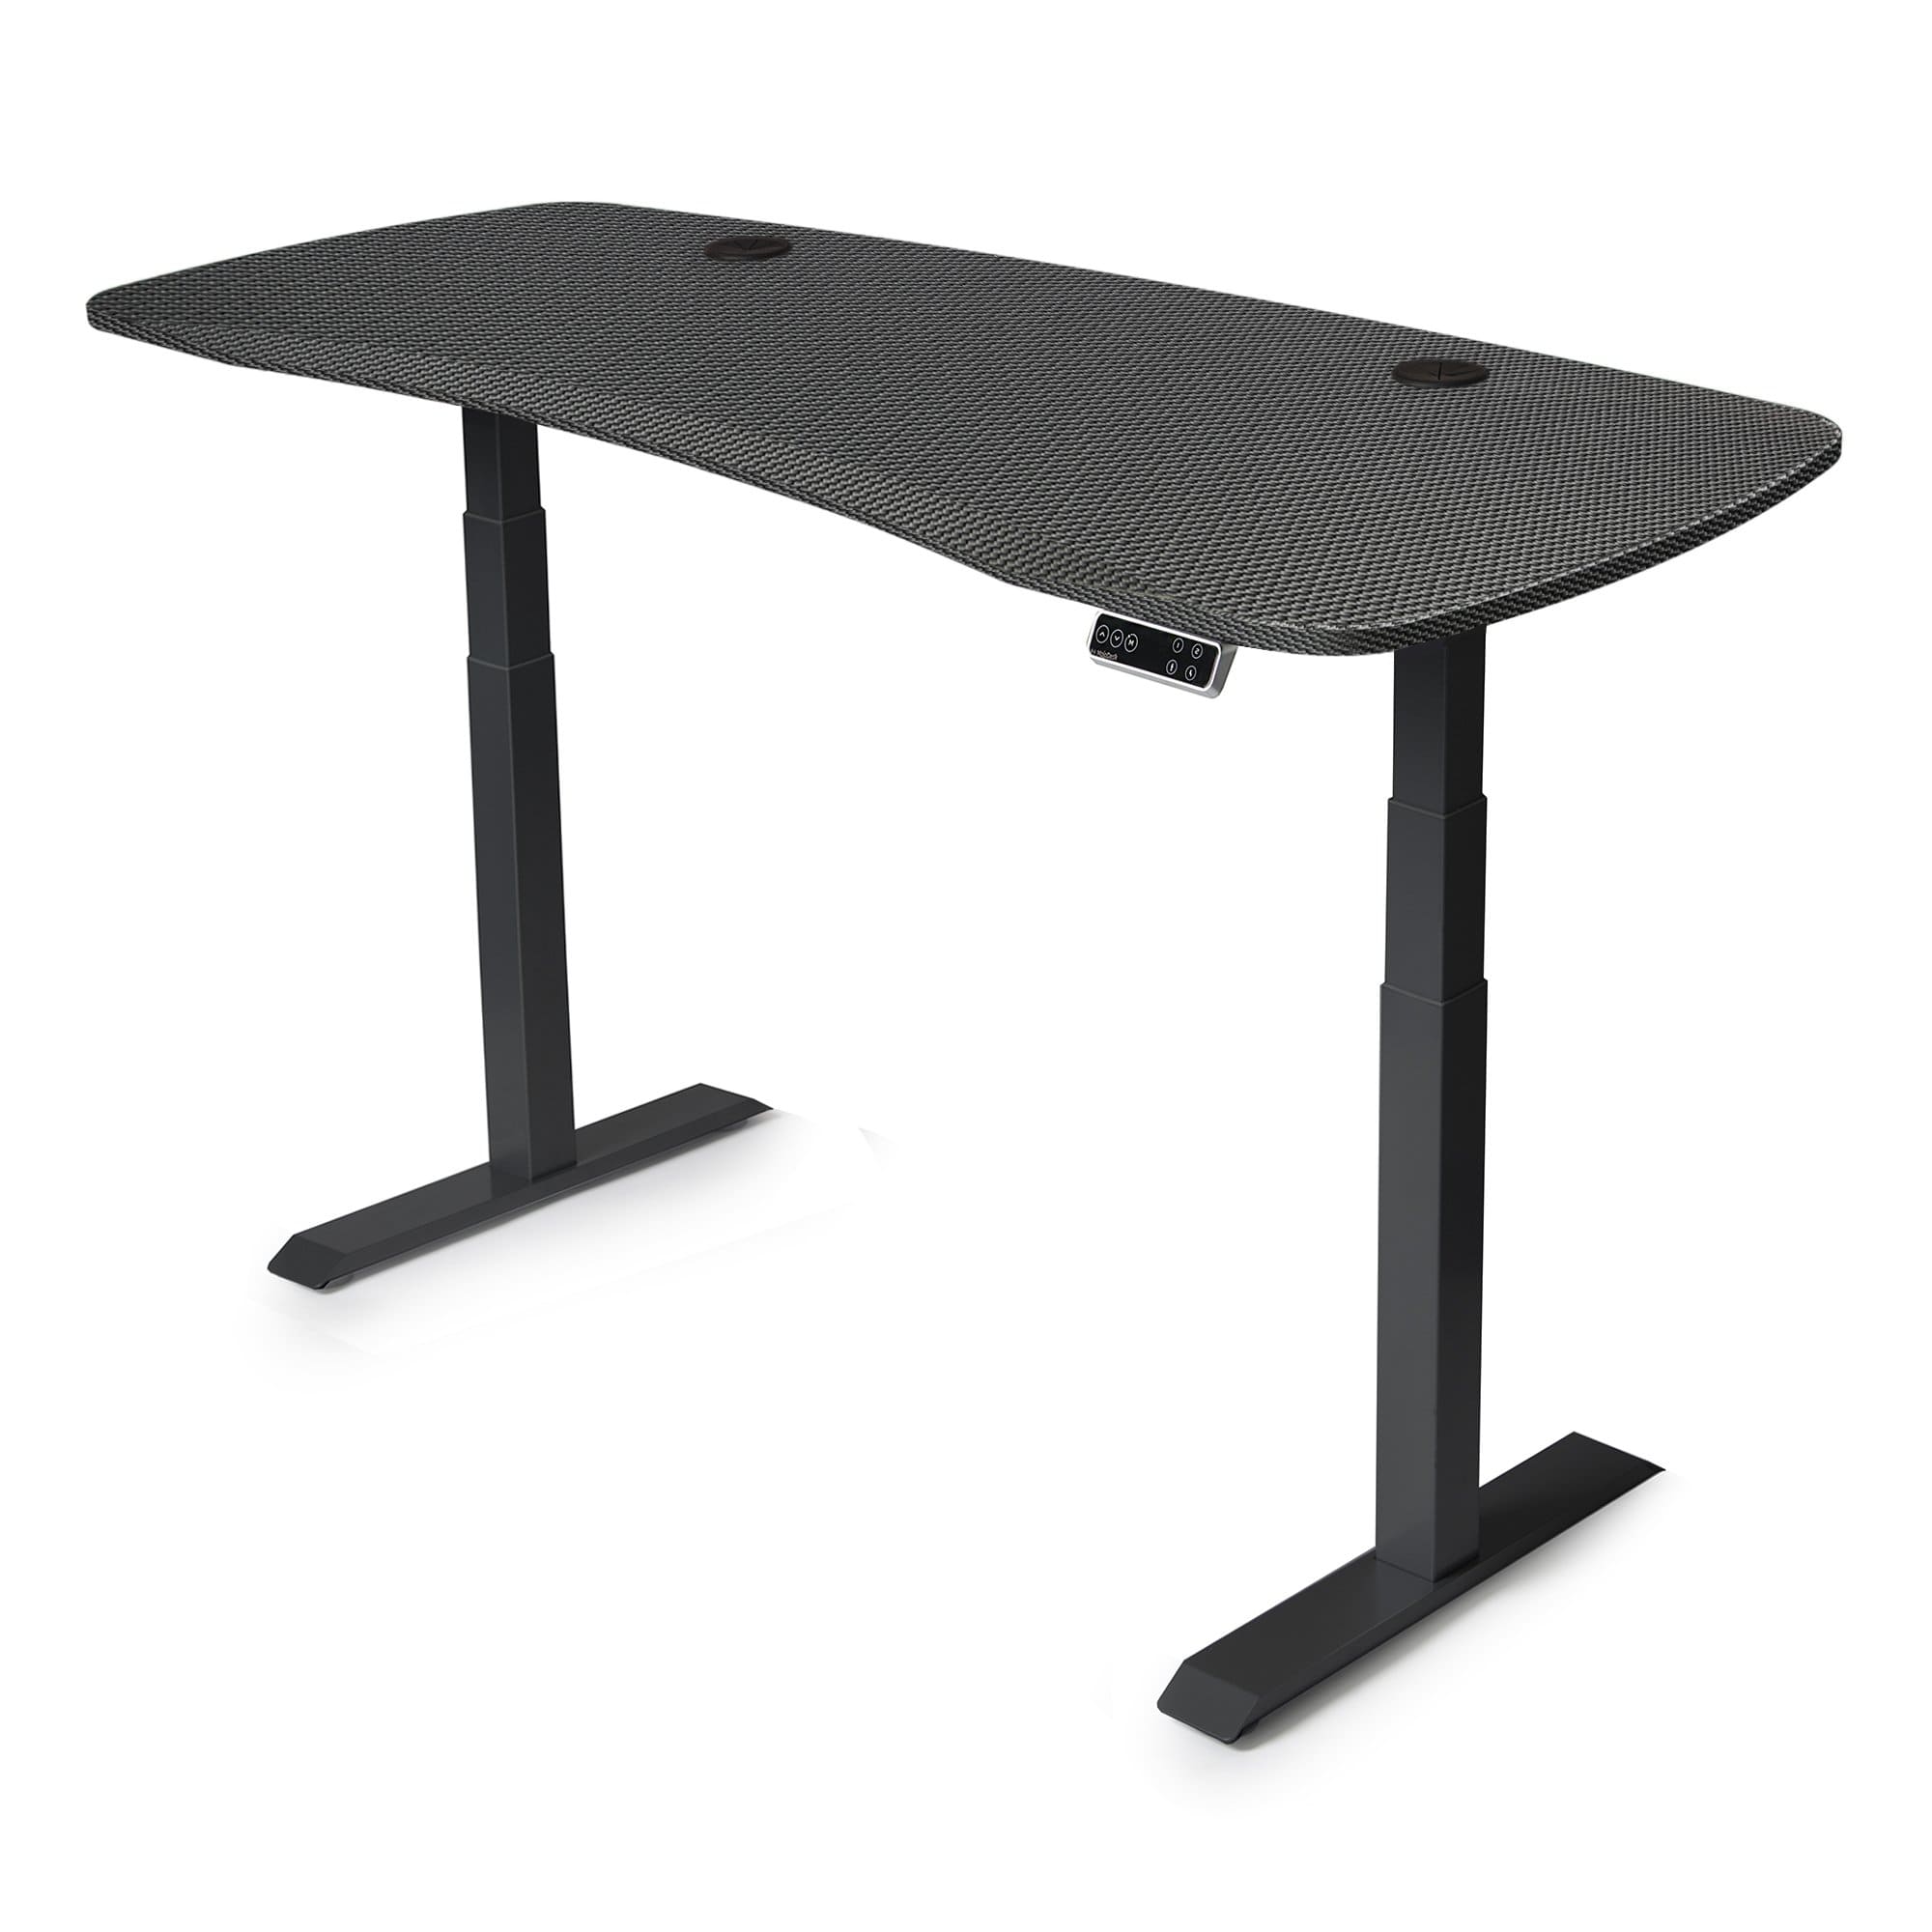 72x30 Electric Height Adjustable Desk - Frame Color: Black - Desktop Color: Carbon Fiber